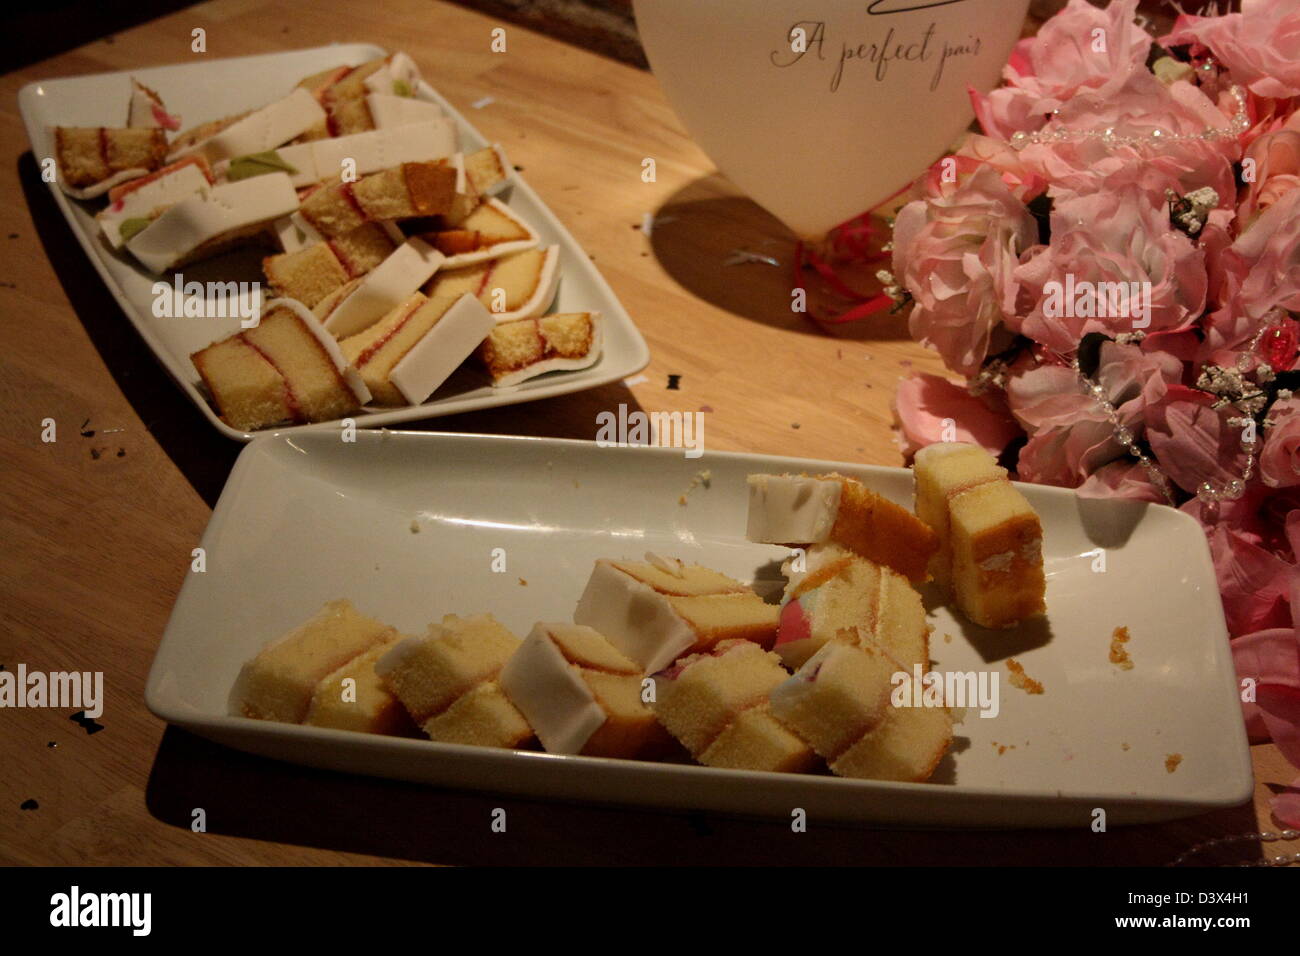 Le gâteau coupé en morceaux présentés sur une assiette, à côté d'un ballon et d'un bouquet. Banque D'Images